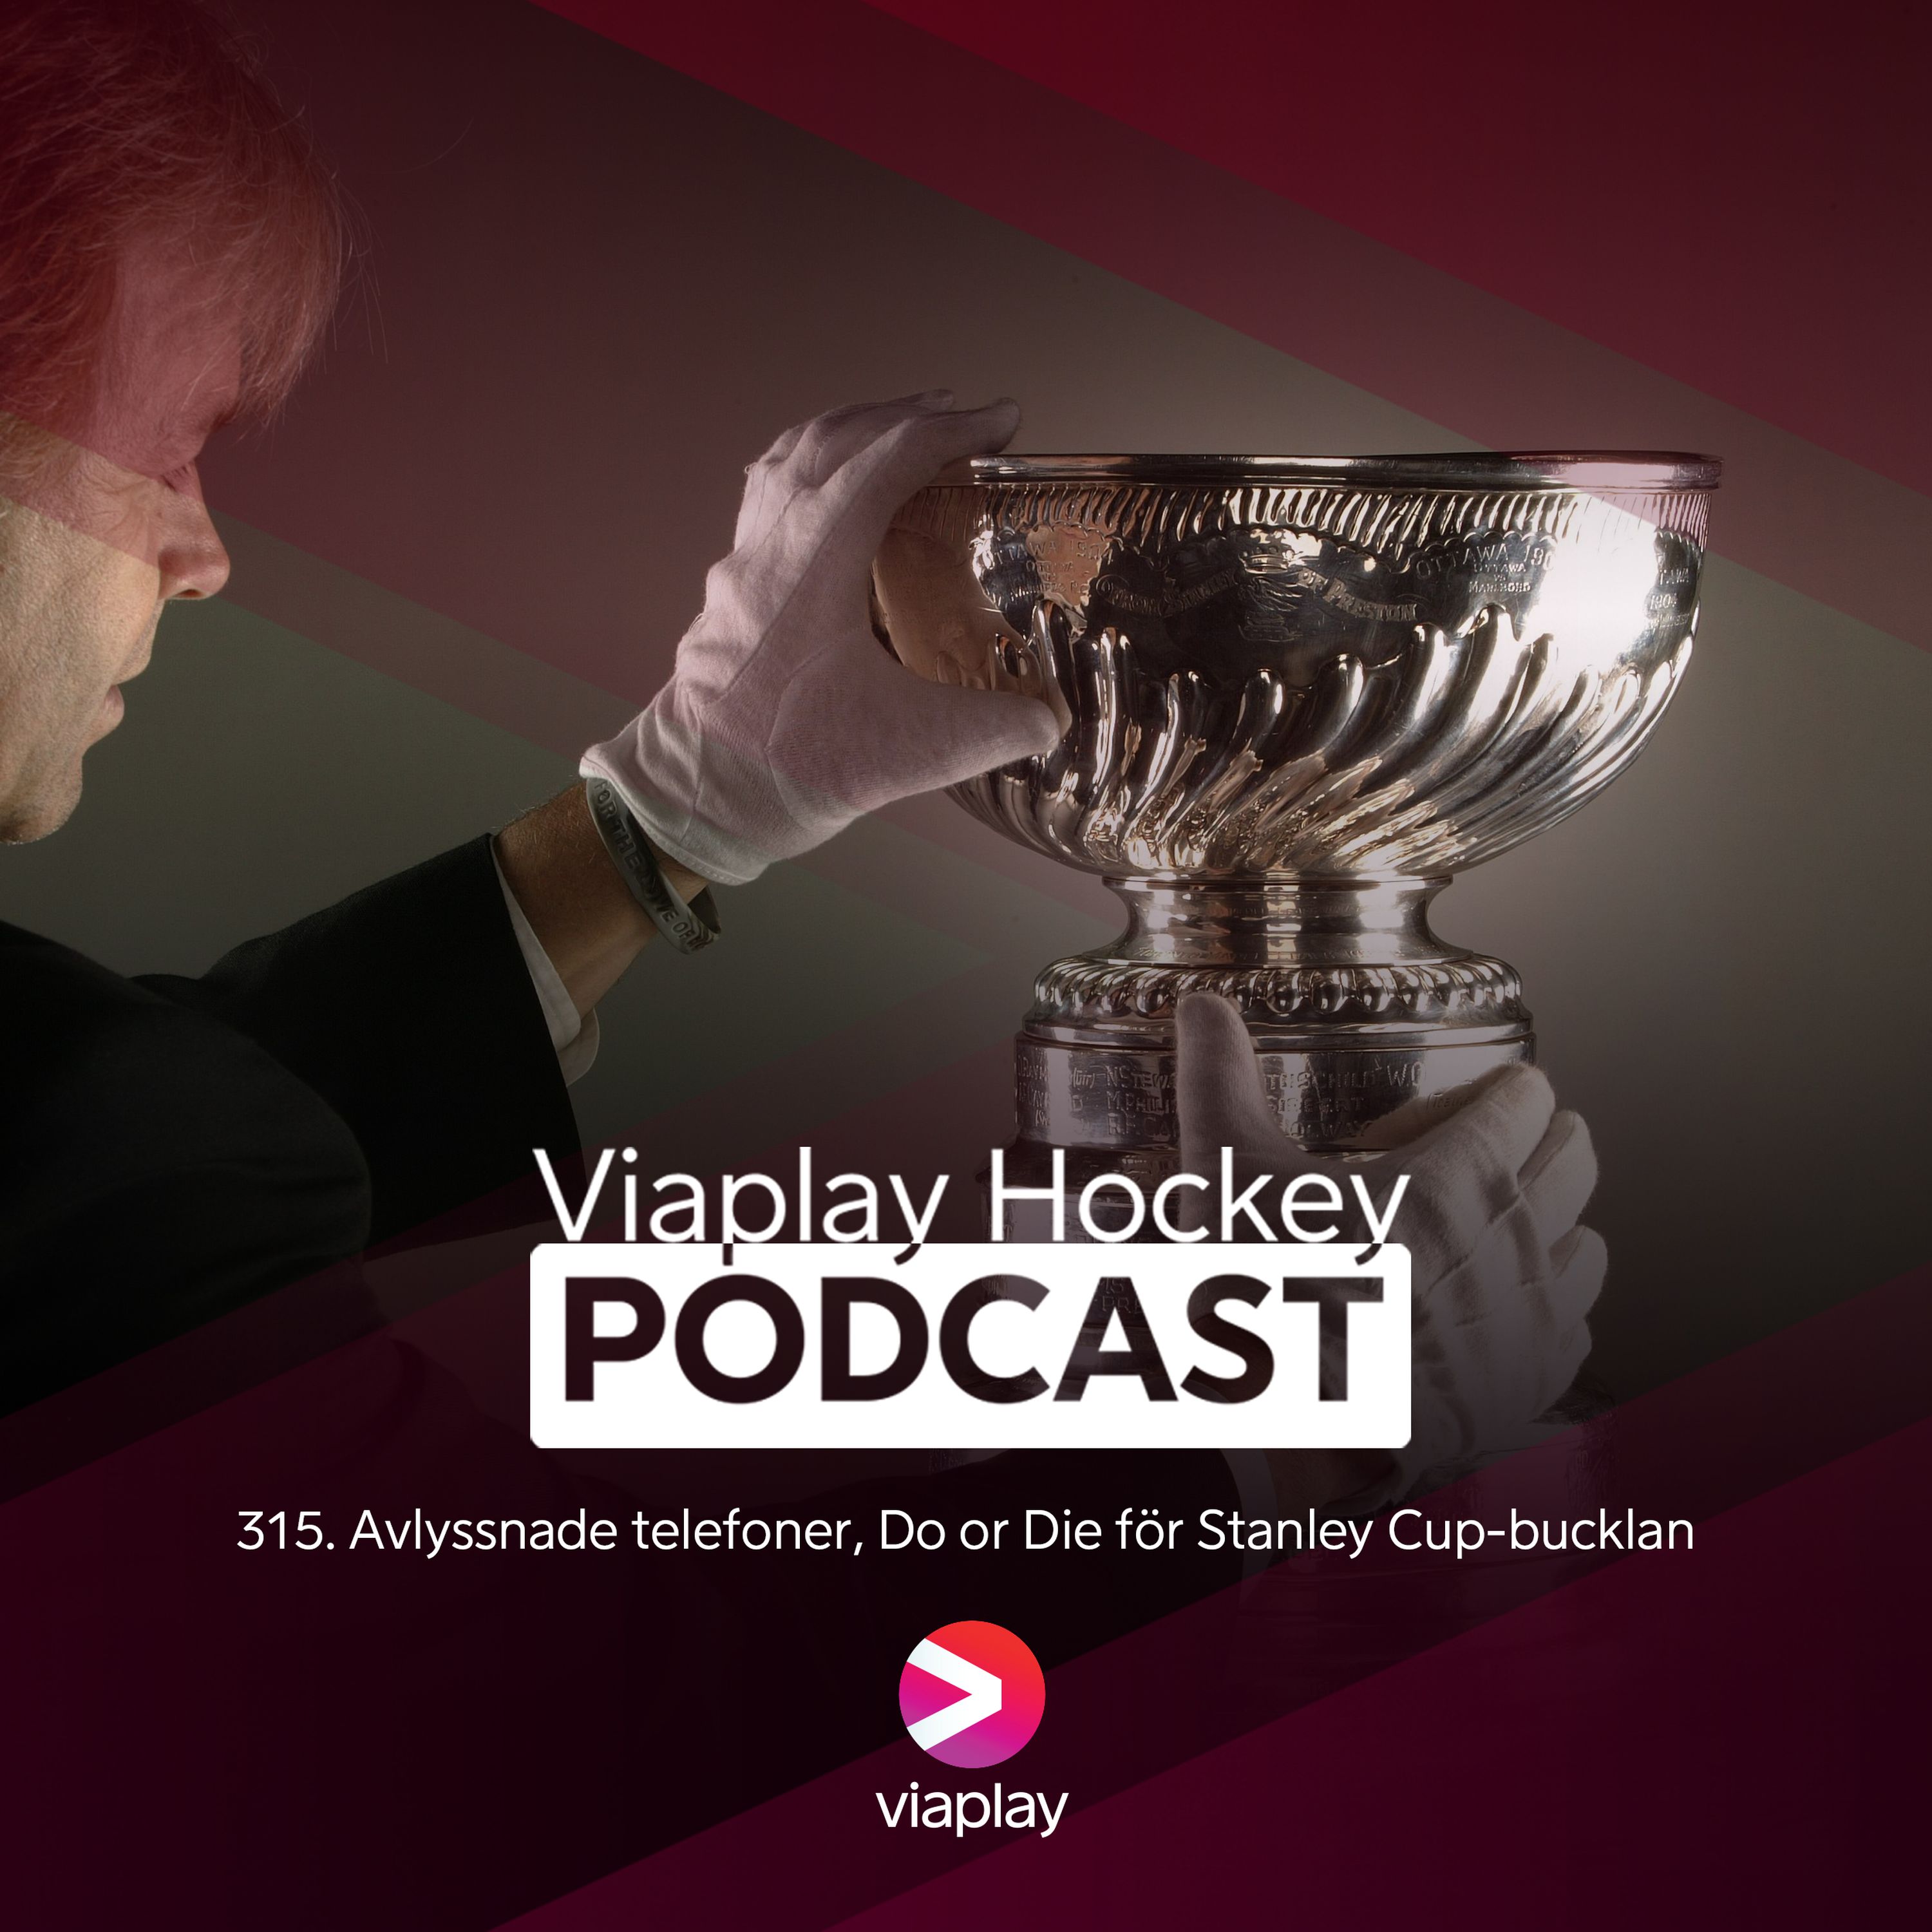 315. Viaplay Hockey Podcast - Avlyssnade telefoner, Do or Die för Stanley Cup-bucklan.